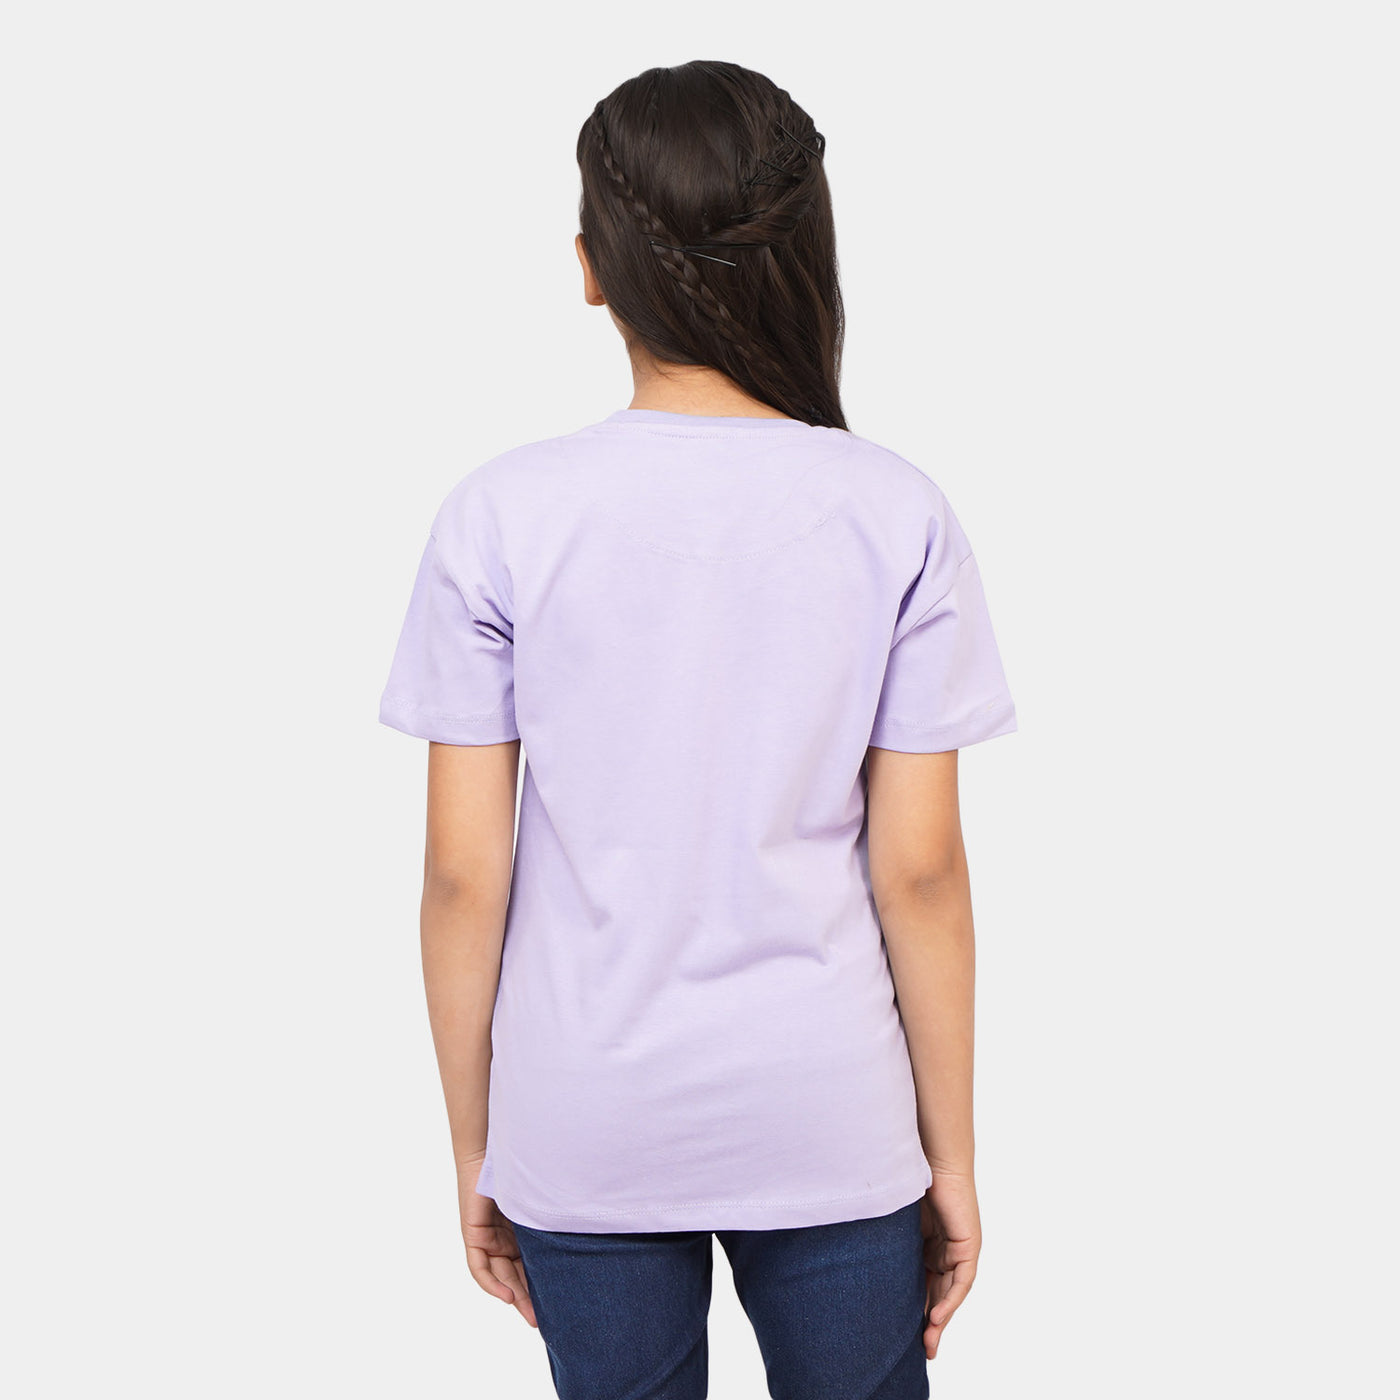 Girls Cotton T-Shirt Rapunzel - Purple